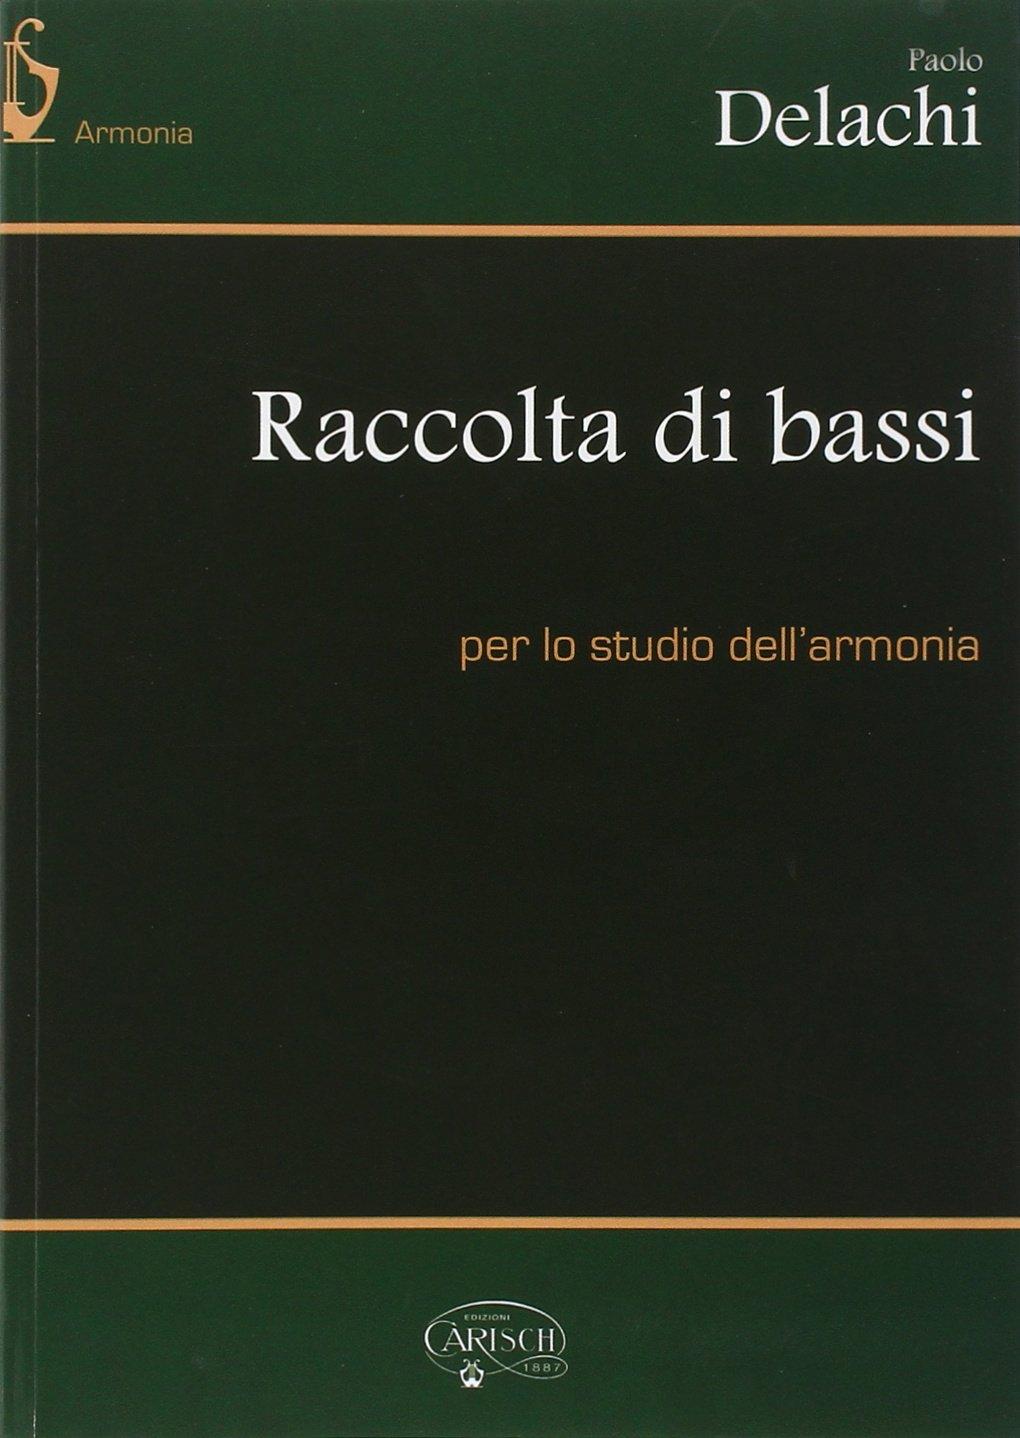 Raccolta Di Bassi Per Lo Studio Dell'Armonia - Paolo Delachi | Suono Flauti